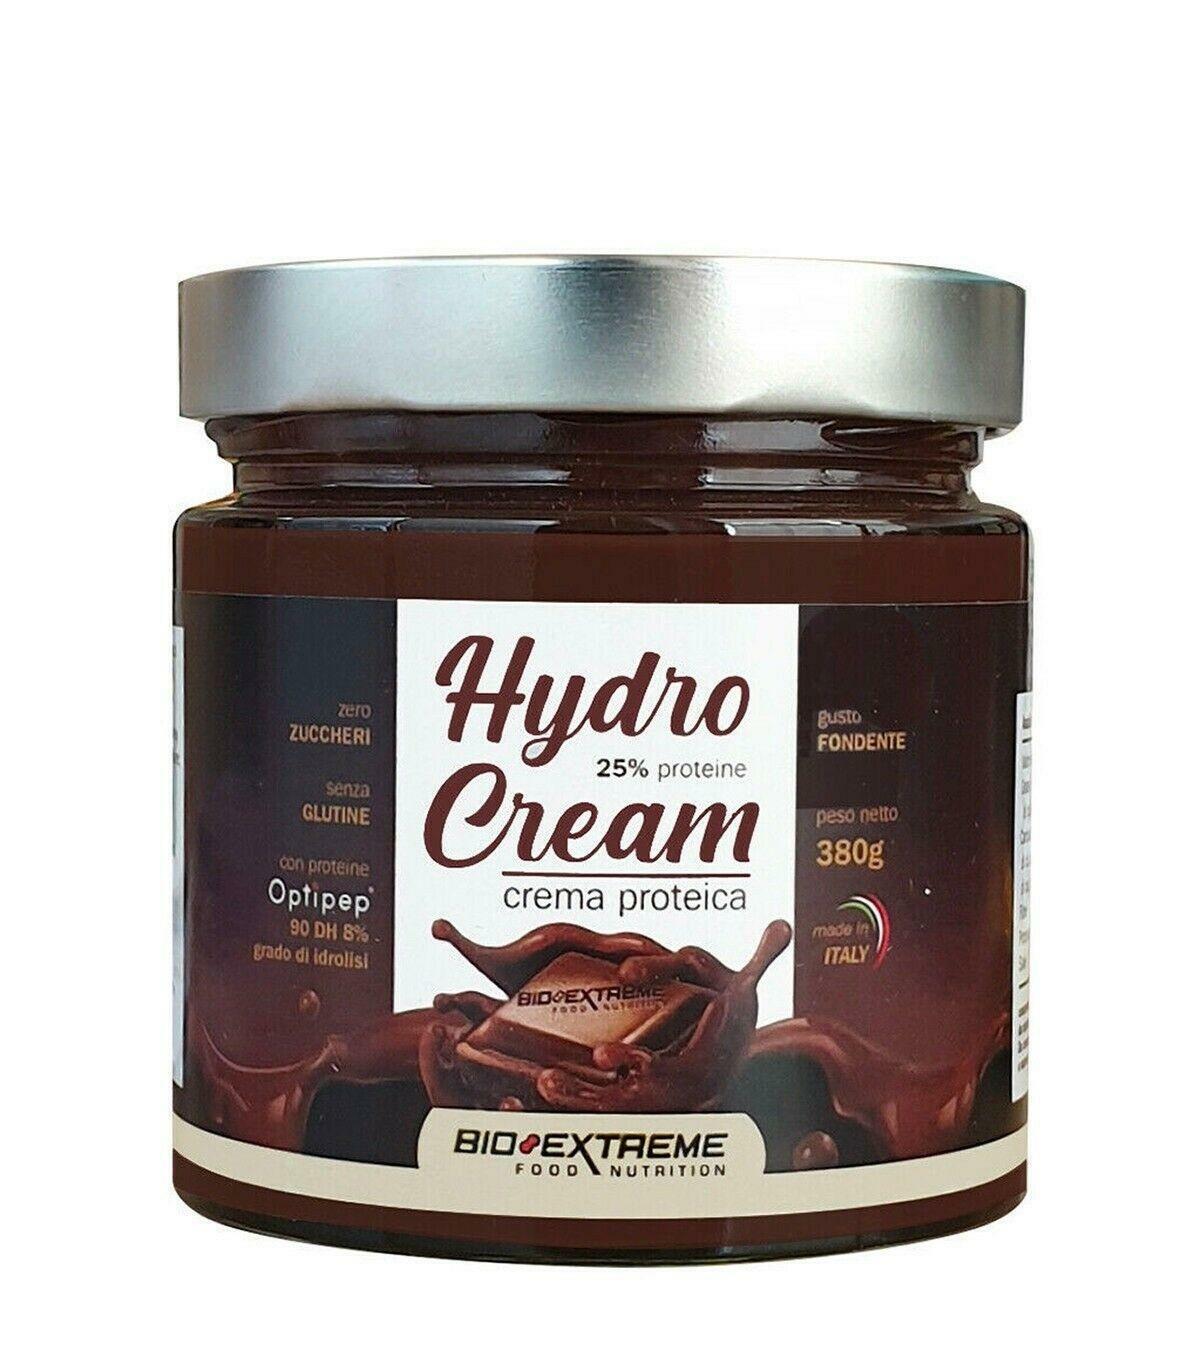 bio extreme hydro cream crema proteica gusto fondente - 380g